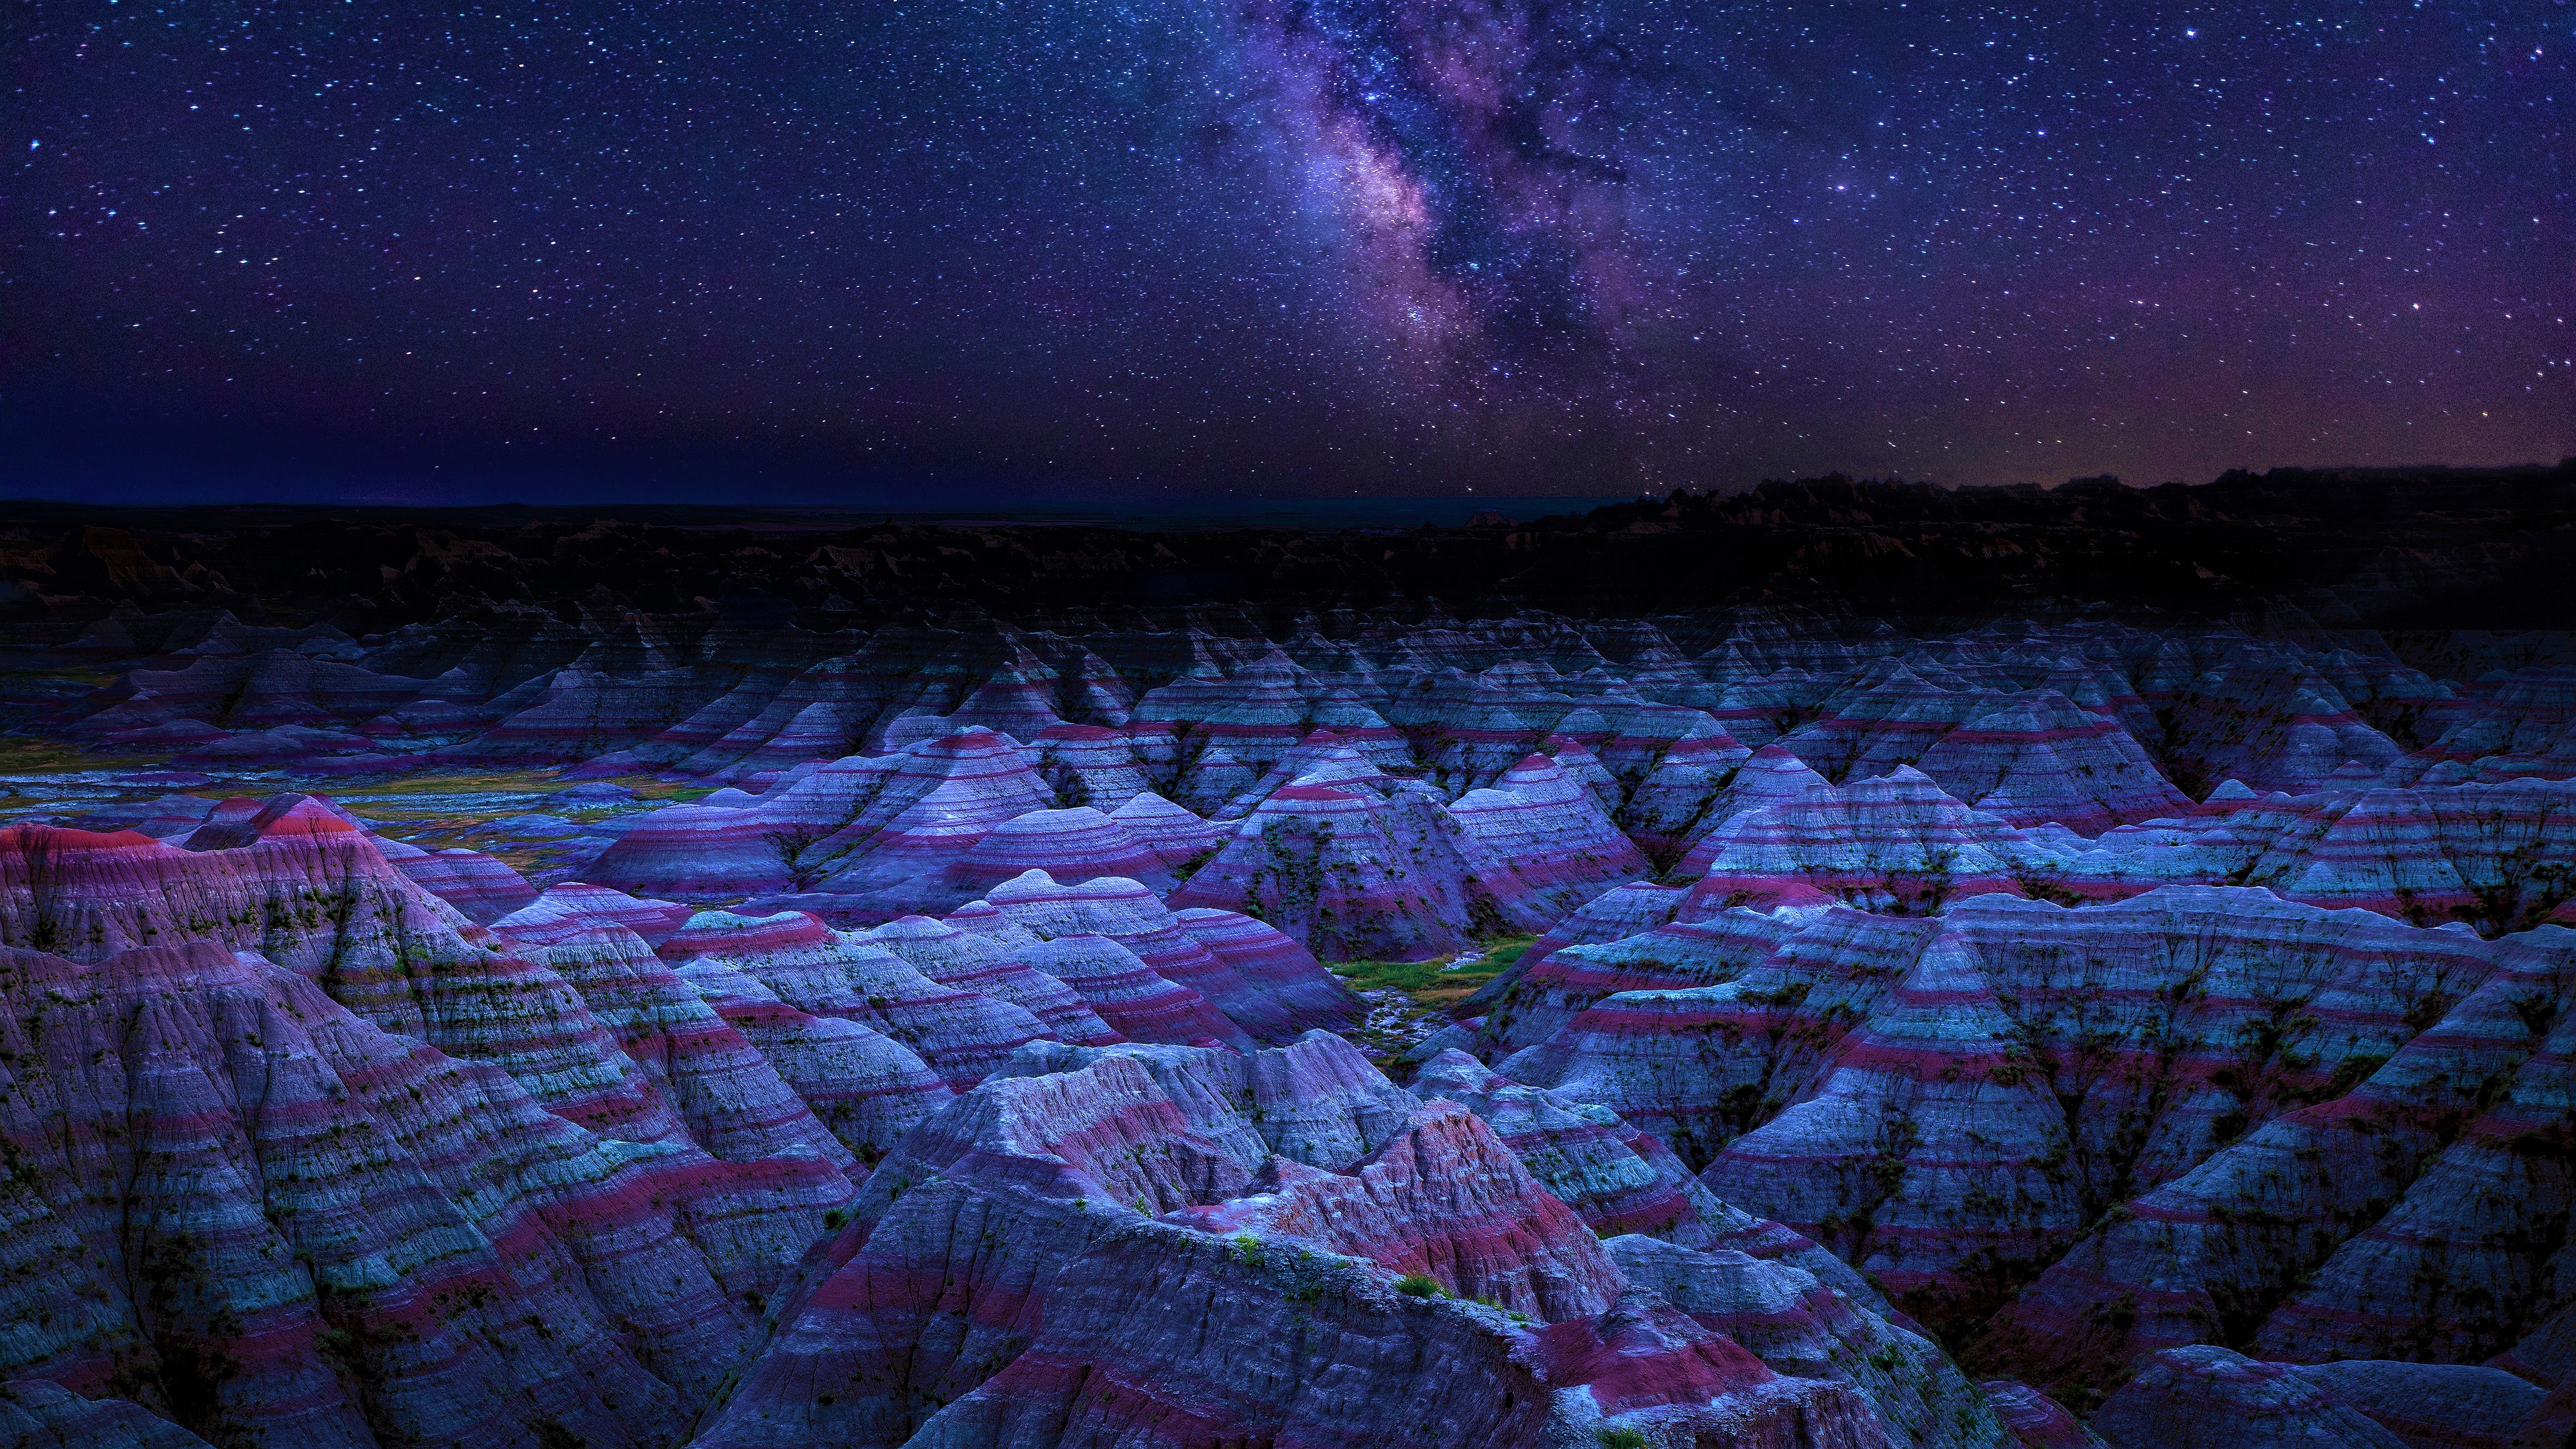 Danxia Landform Mountains in China at Night by Jose Torres